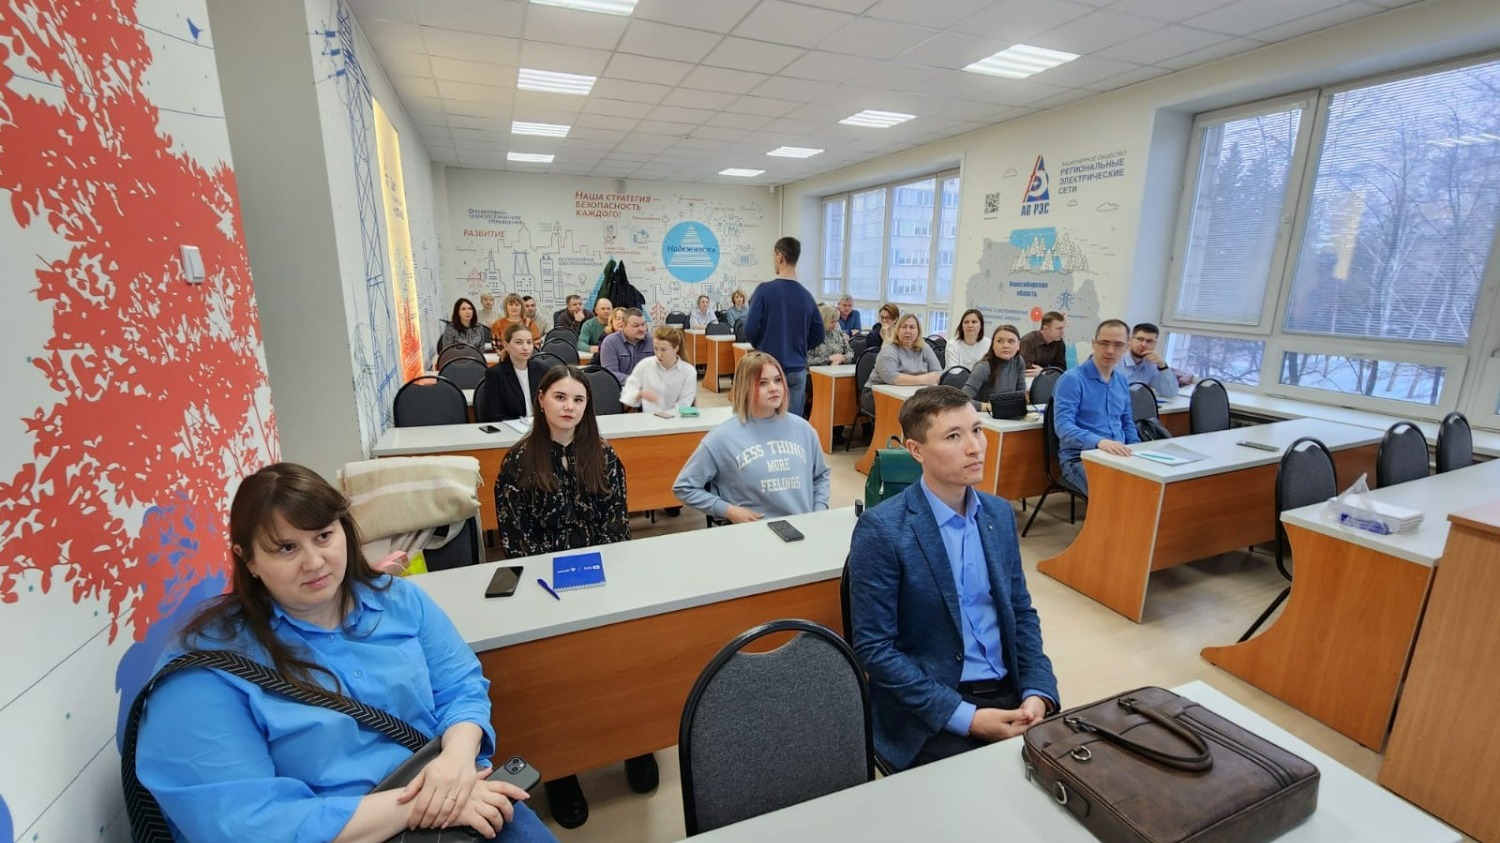 Образовательный проект "Энергия успеха" проводит АО "РЭС" в Новосибирской области.